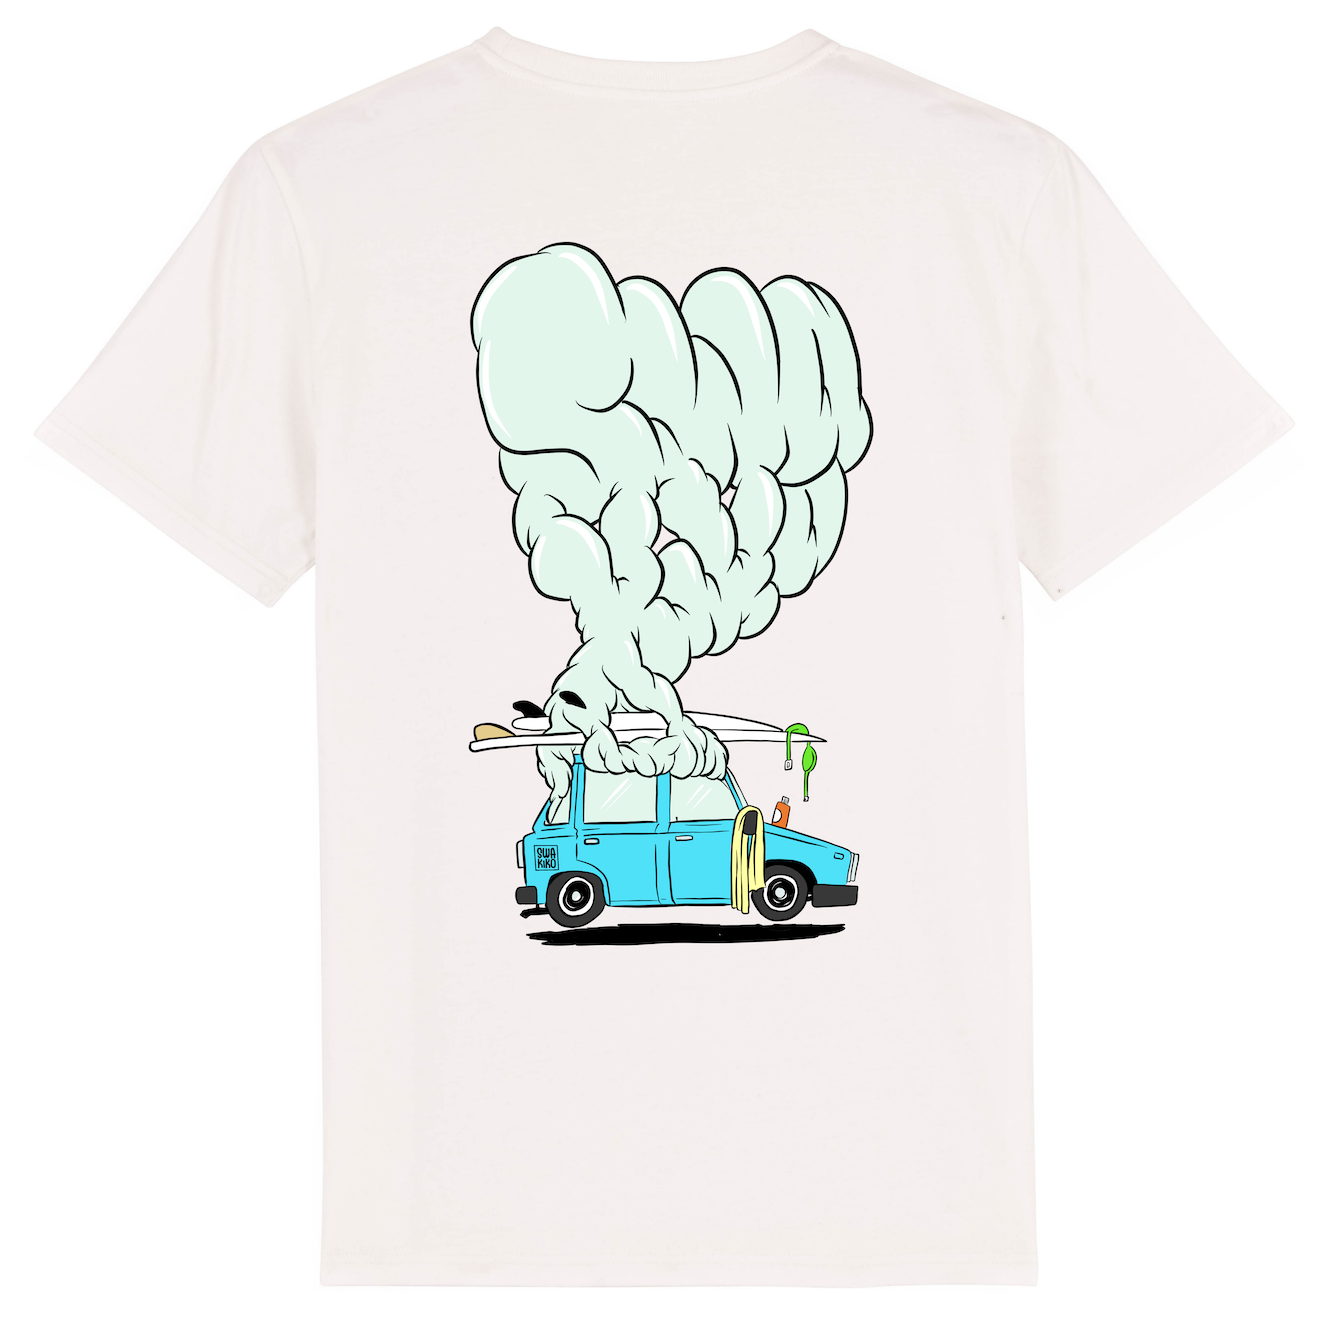 Wit Surf t-shirt met design van een rokende auto van de stoke met surfboard op dak